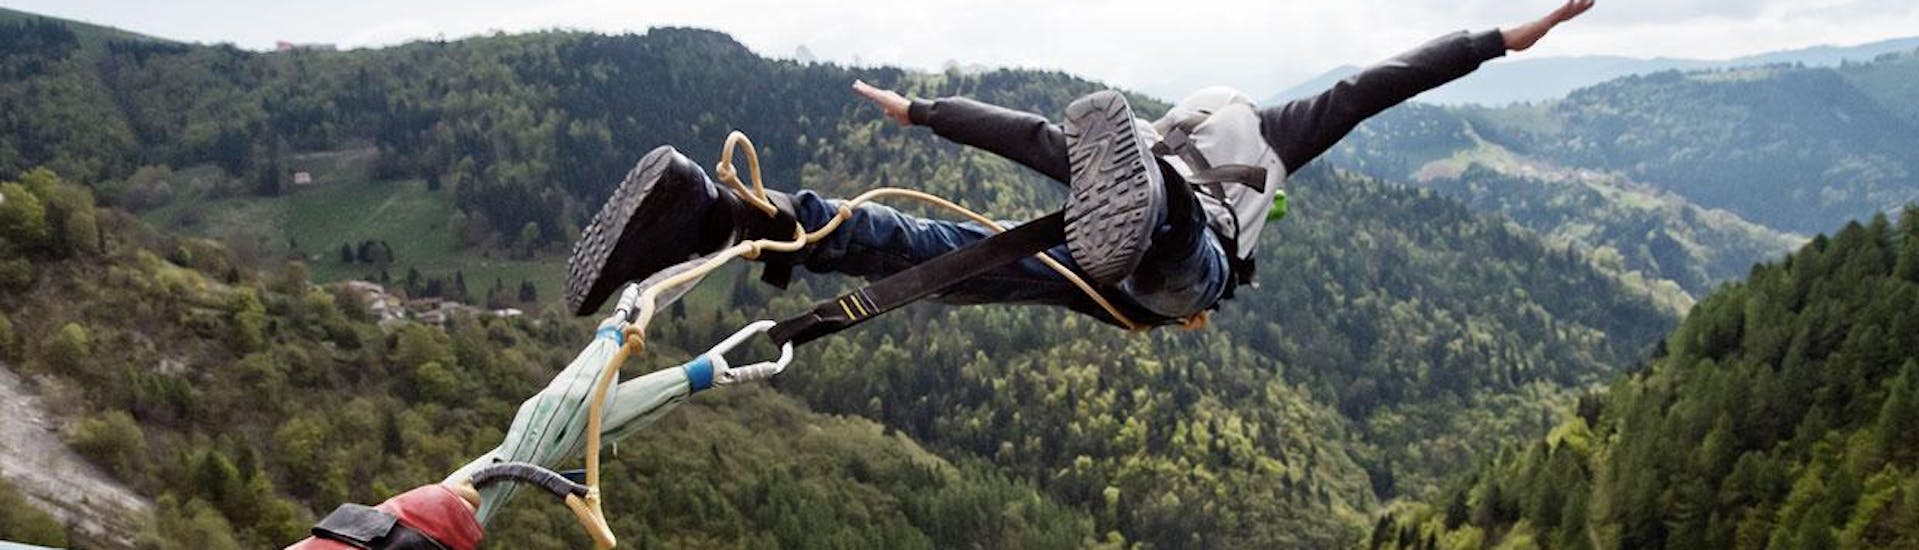 Un uomo sta saltando durante il Bungee Jumping dal Ponte di Valgadena (175m) con Bungy X Team Valgadena.